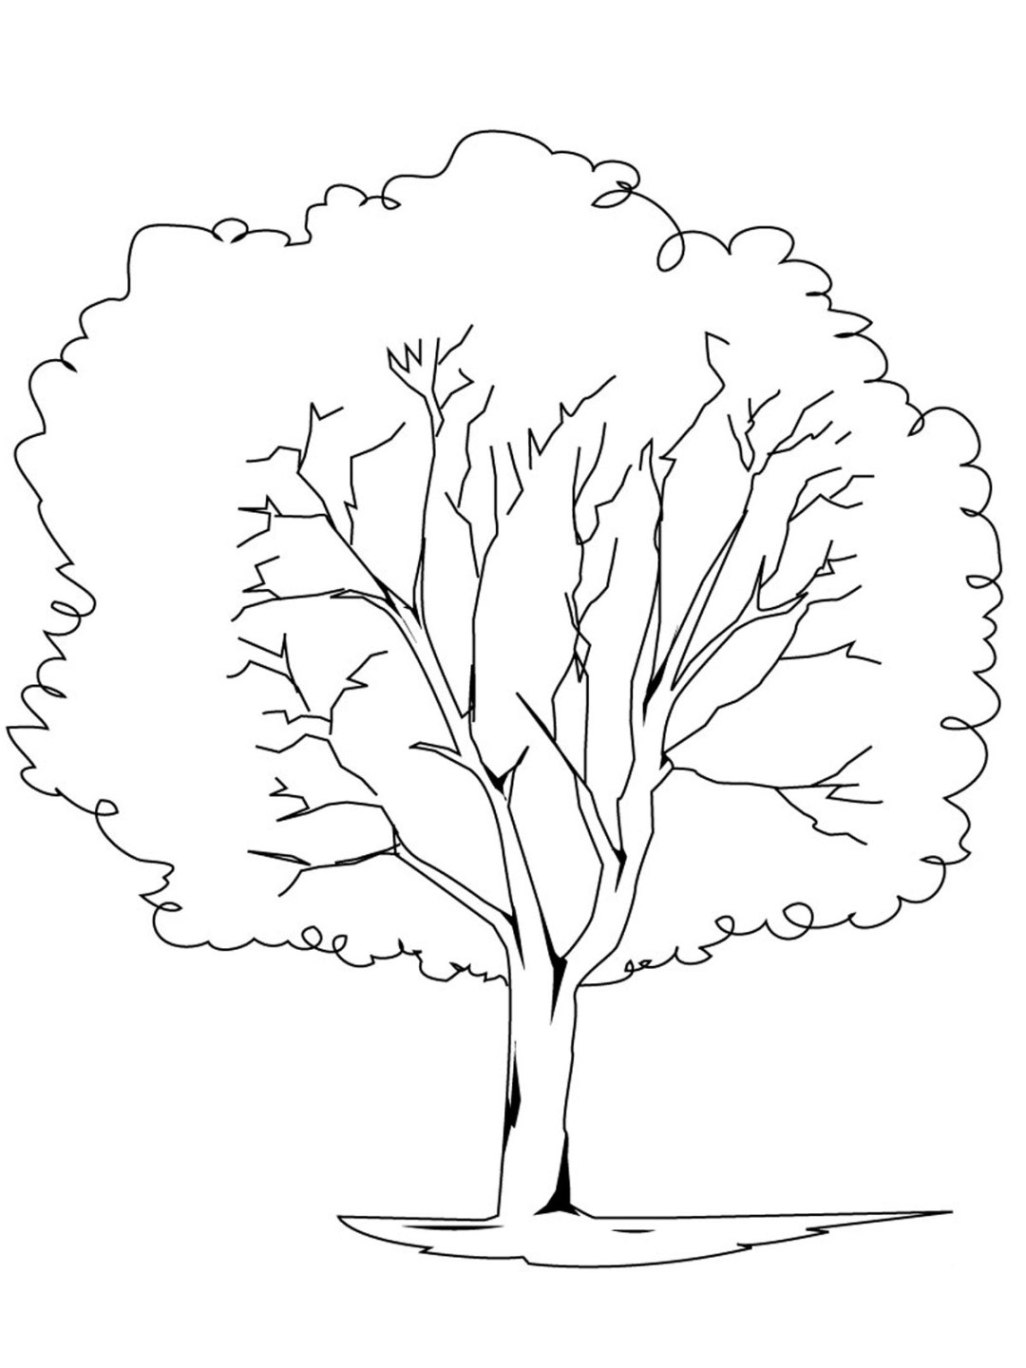 Malvorlagen zum Drucken Ausmalbild Baum kostenlos 4